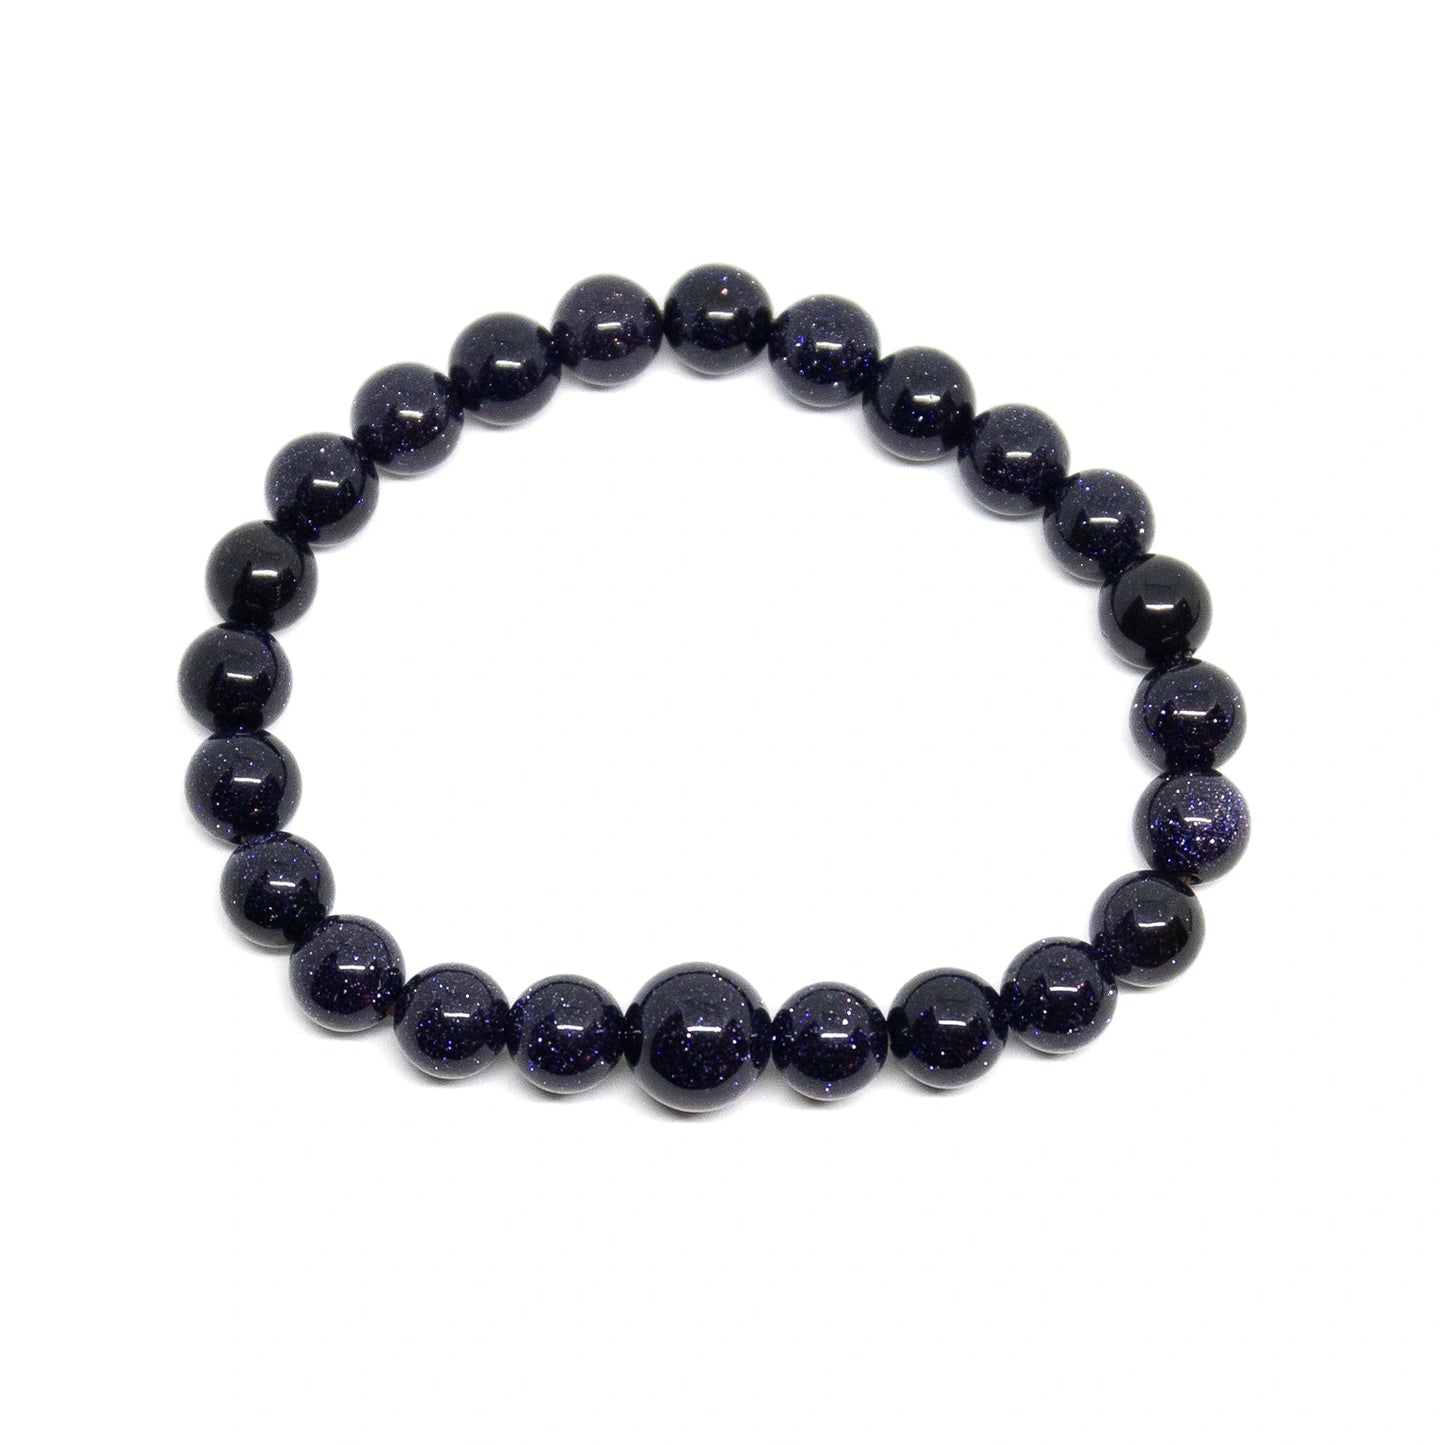 Blue Goldstone Stretchy Beaded Bracelet - Prayer Beads - 8mm (2 Pack)